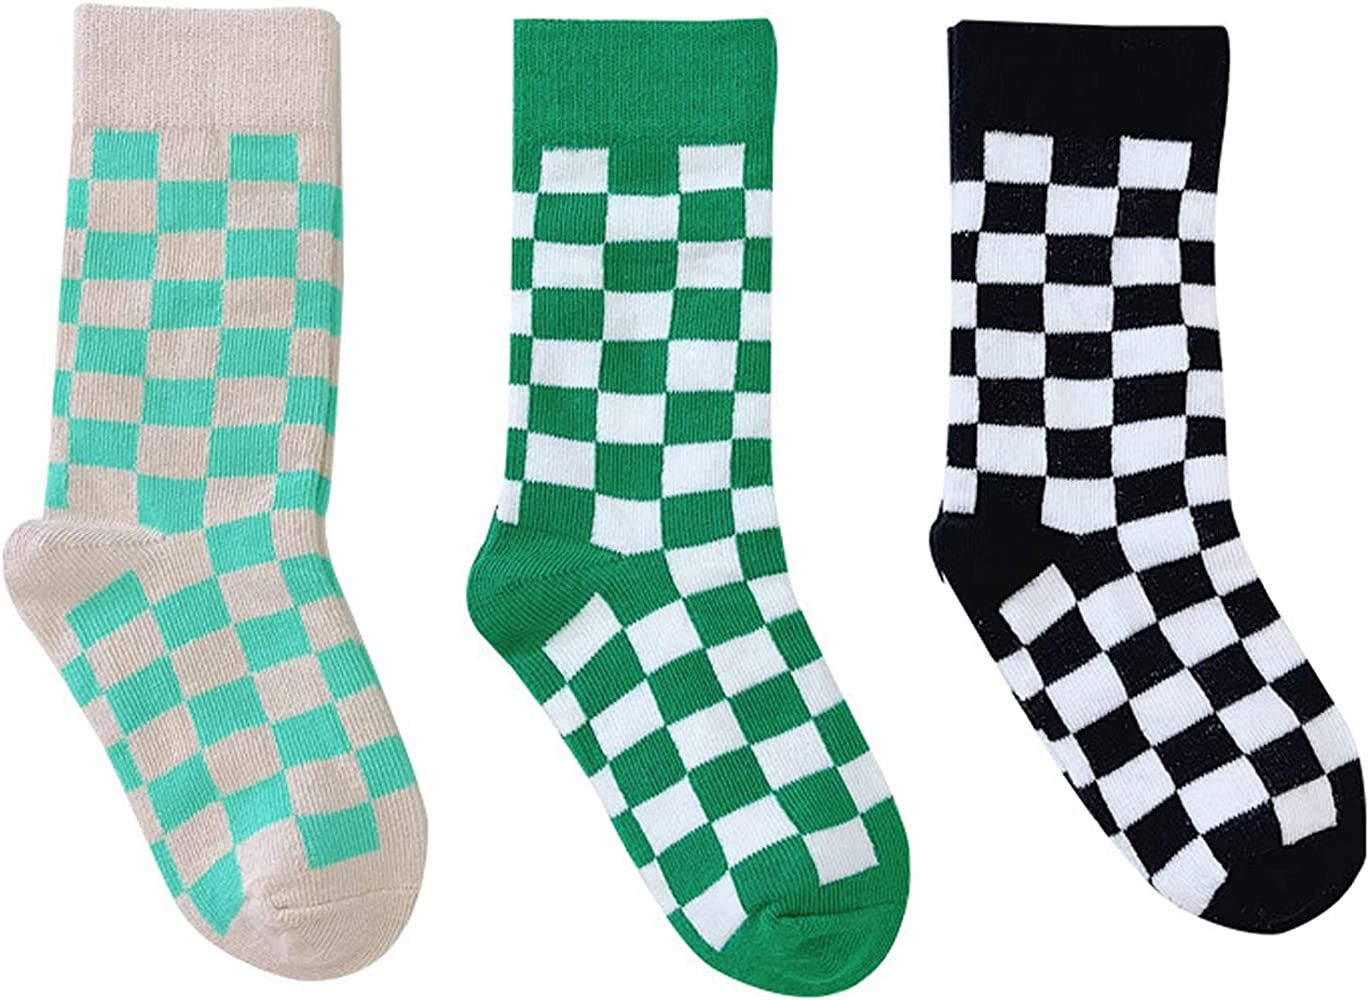 Girls Checkered Crew Socks Cotton Cute Novelty Anklet Socks for Kids Toddler Boys Unisex | Amazon (US)